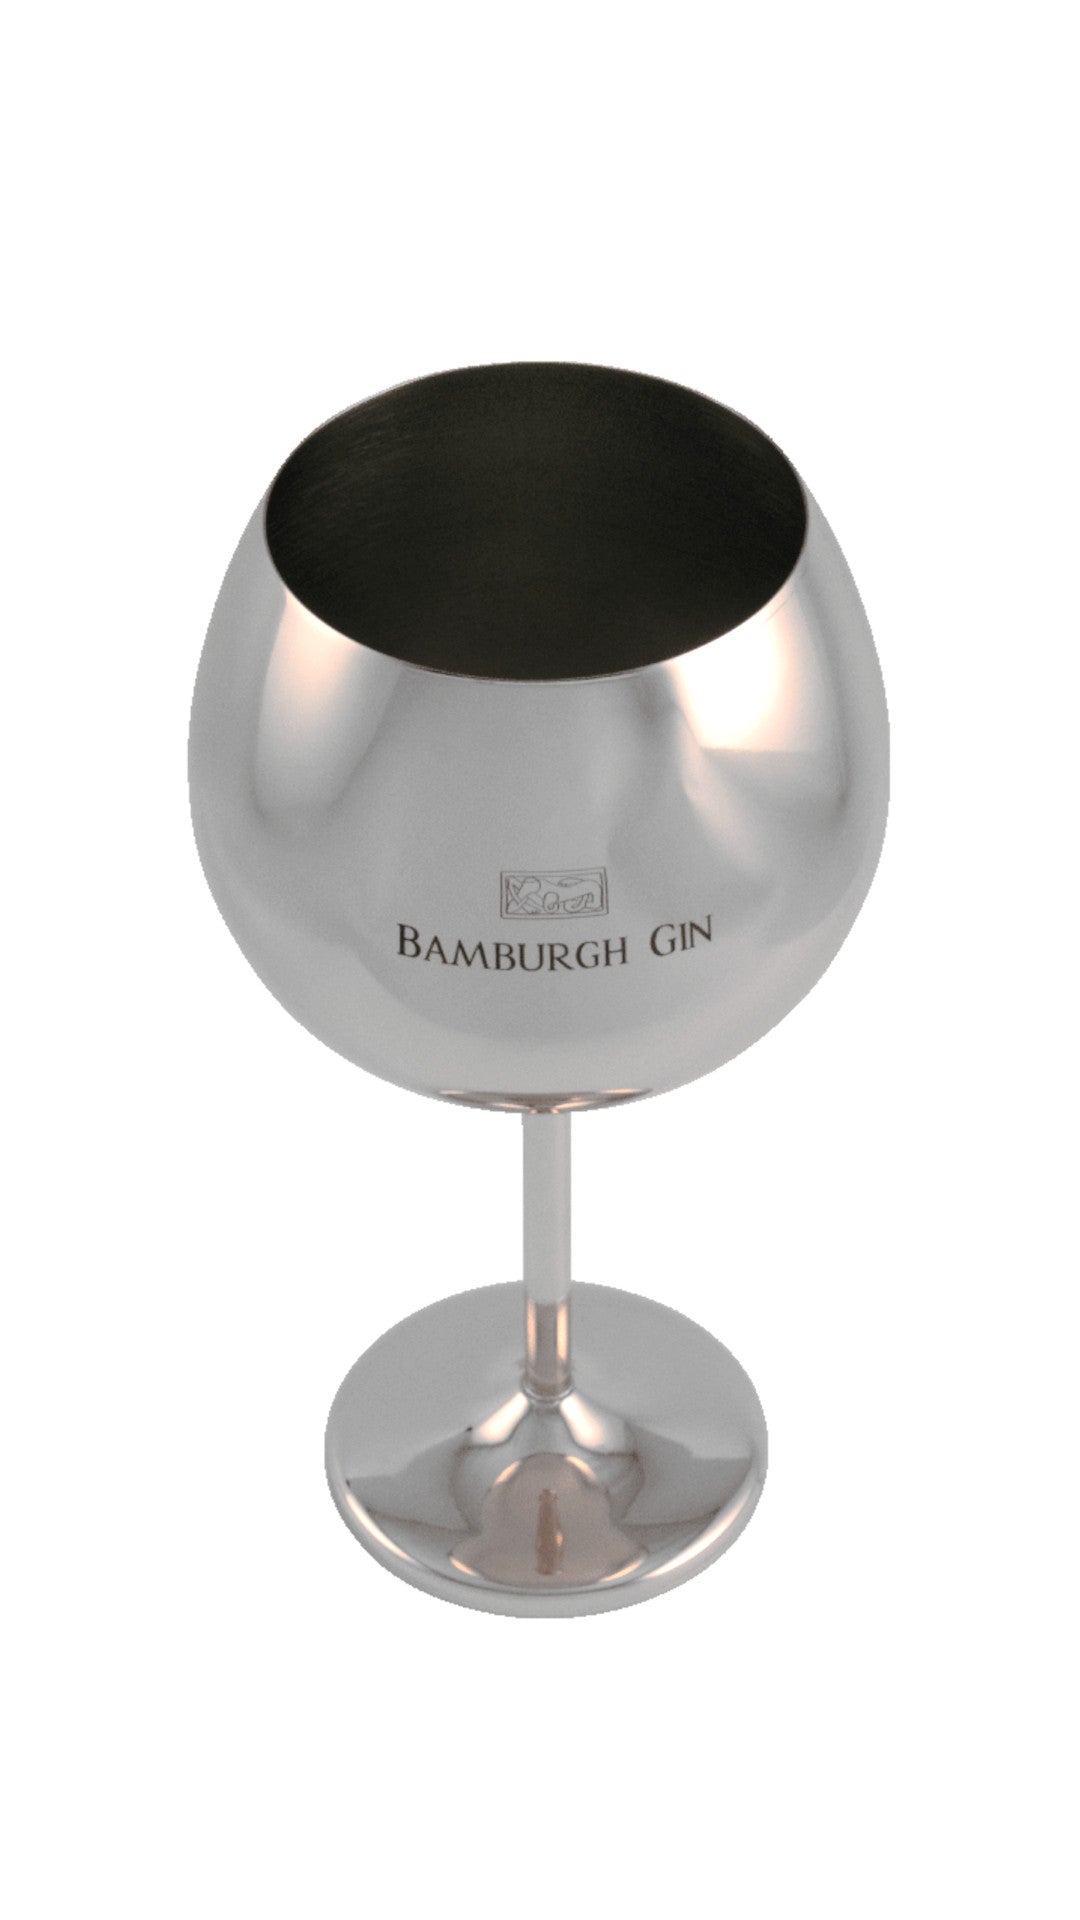 Bamburgh Gin Goblet - Steel